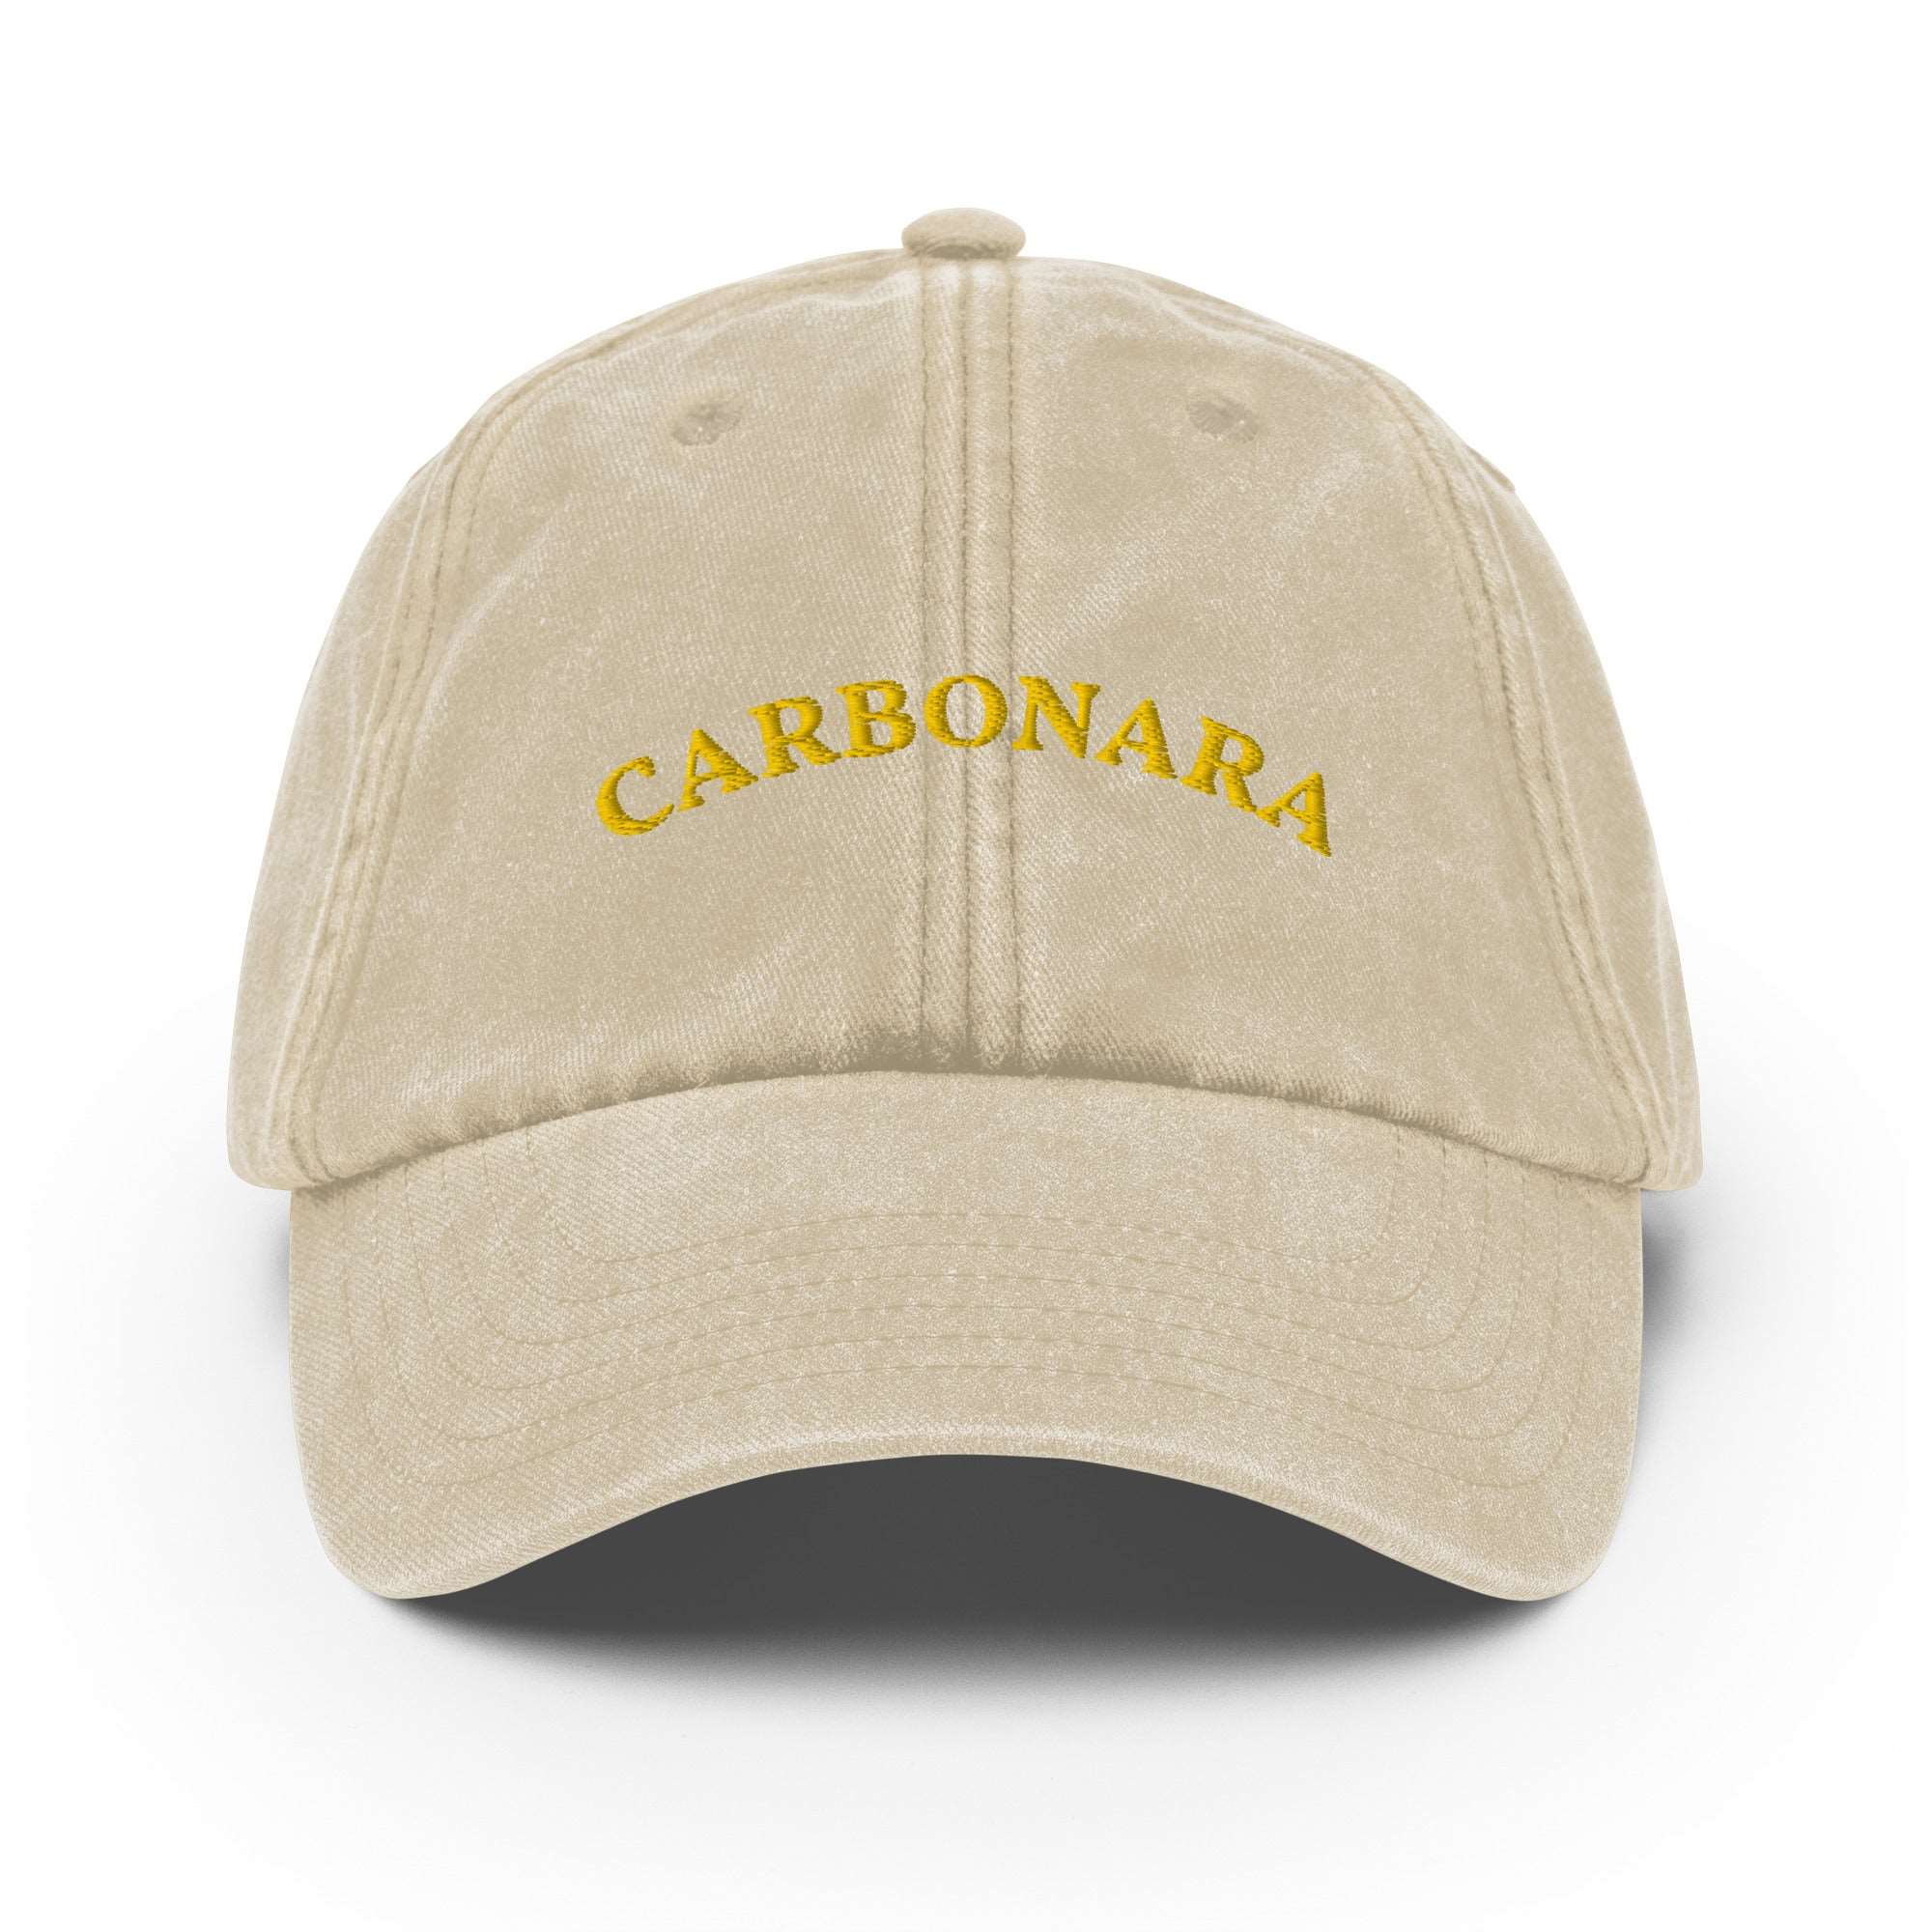 Carbonara Vintage Cap - The Refined Spirit